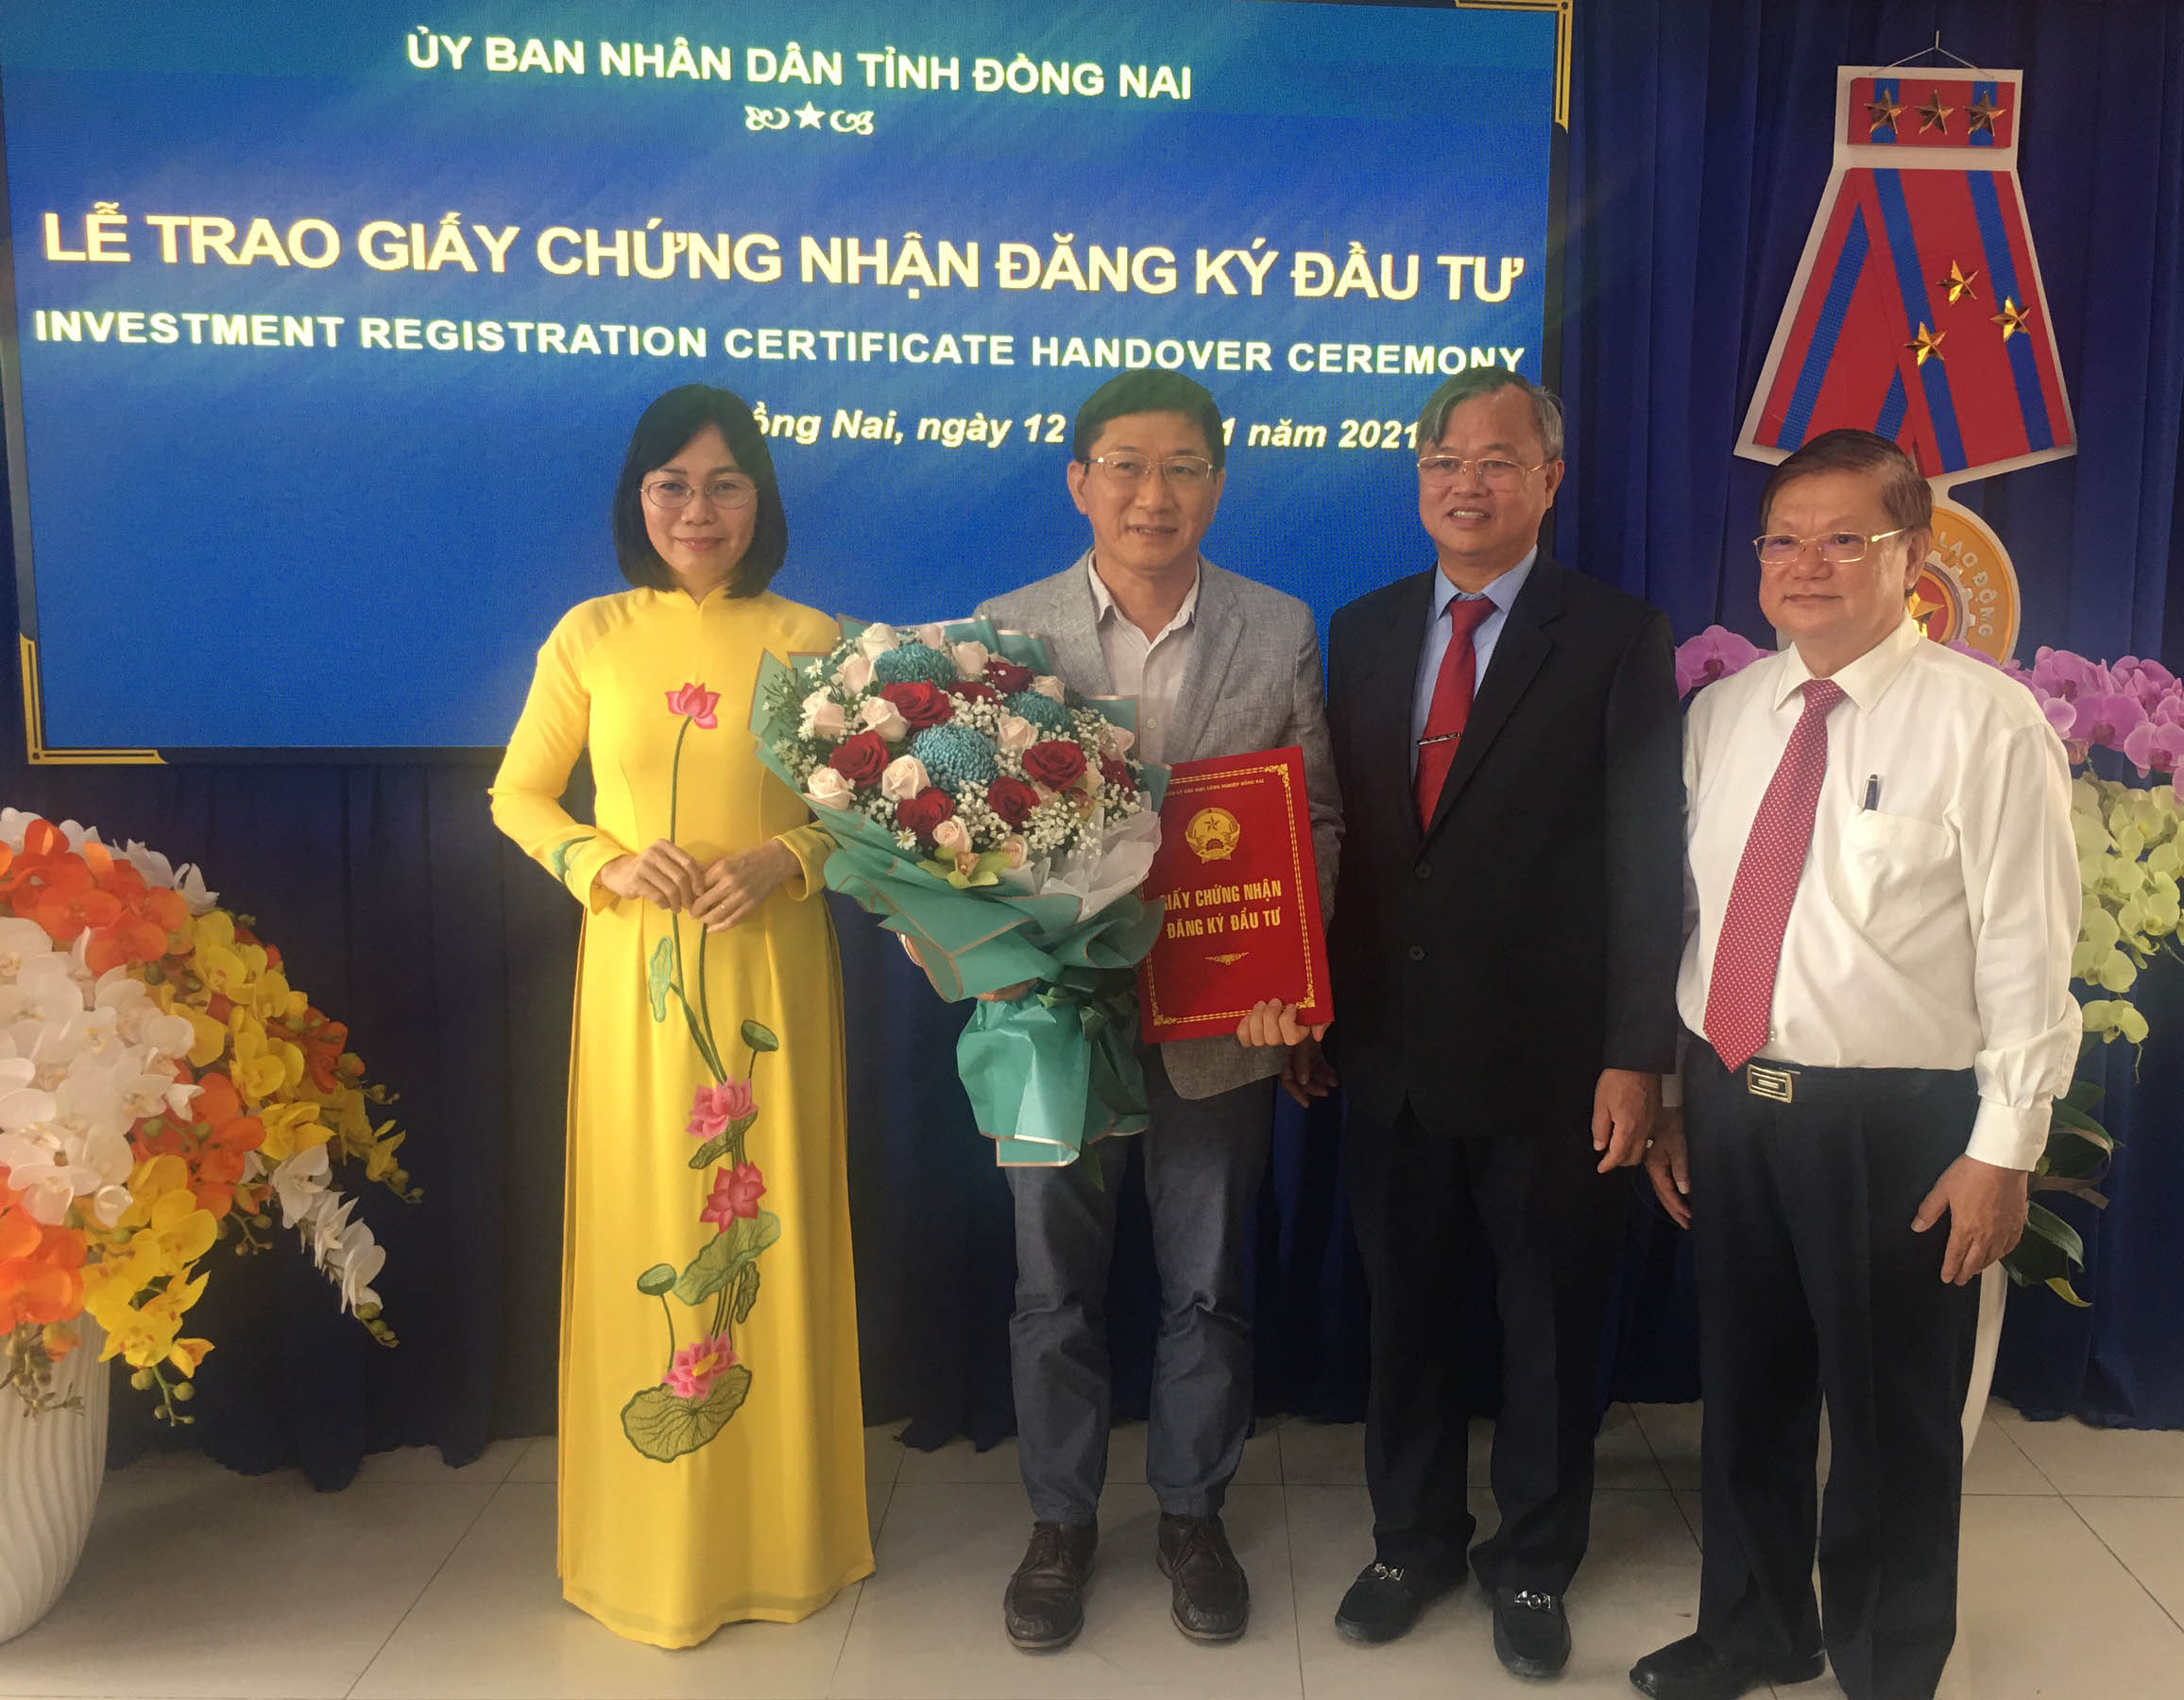 Ông Cao Tiến Dũng, Chủ tịch UBND tỉnh Đồng Nai (đứng thứ 2 từ bên phải) trao giấy phép, chụp ảnh lưu niệm với nhà đầu tư.